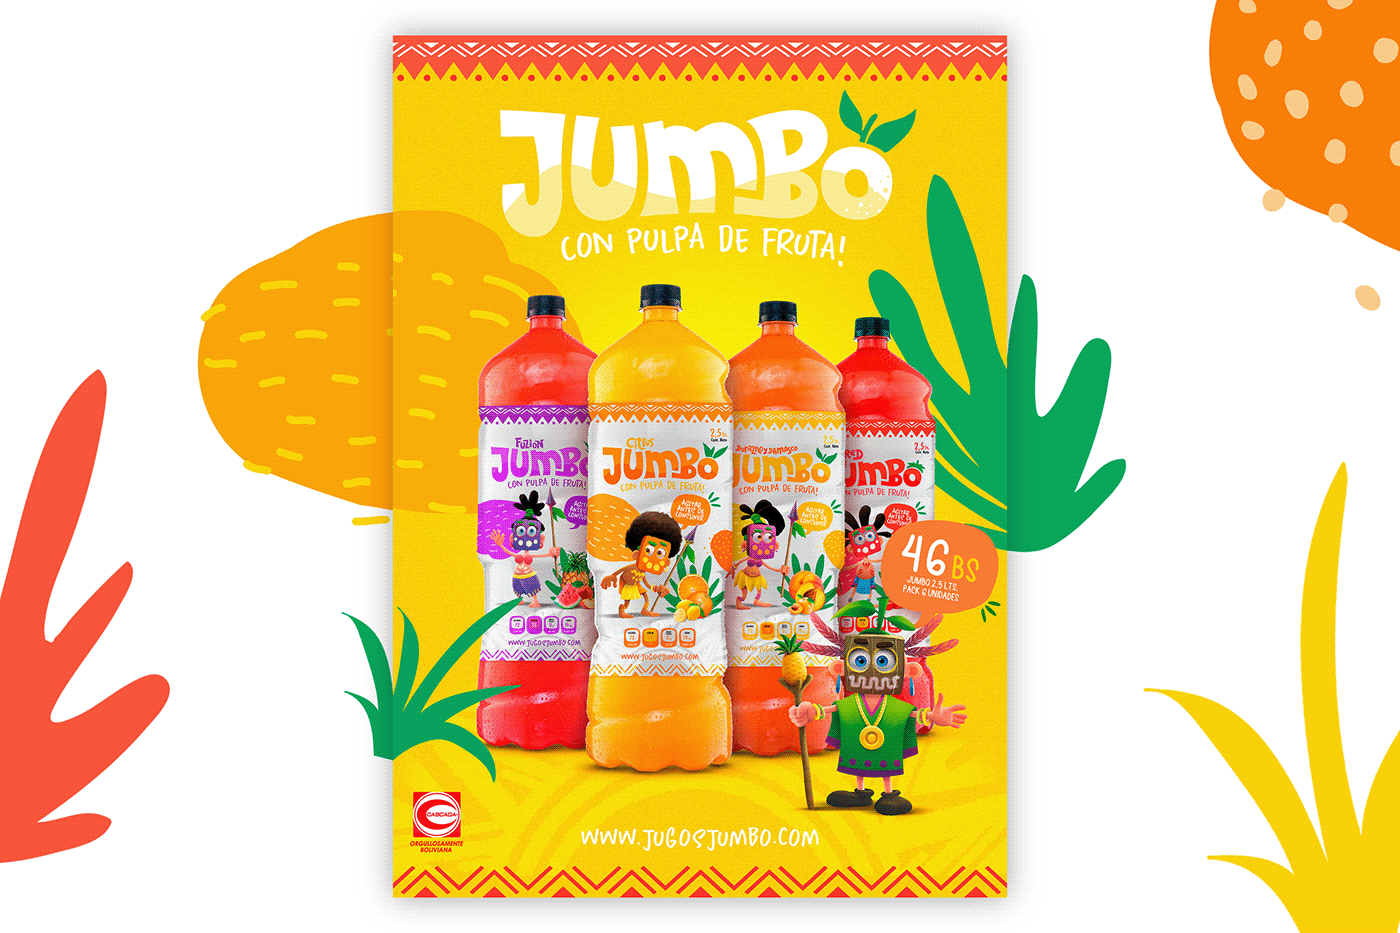 Packaging packing logo design bottle juice flavors fruits Label